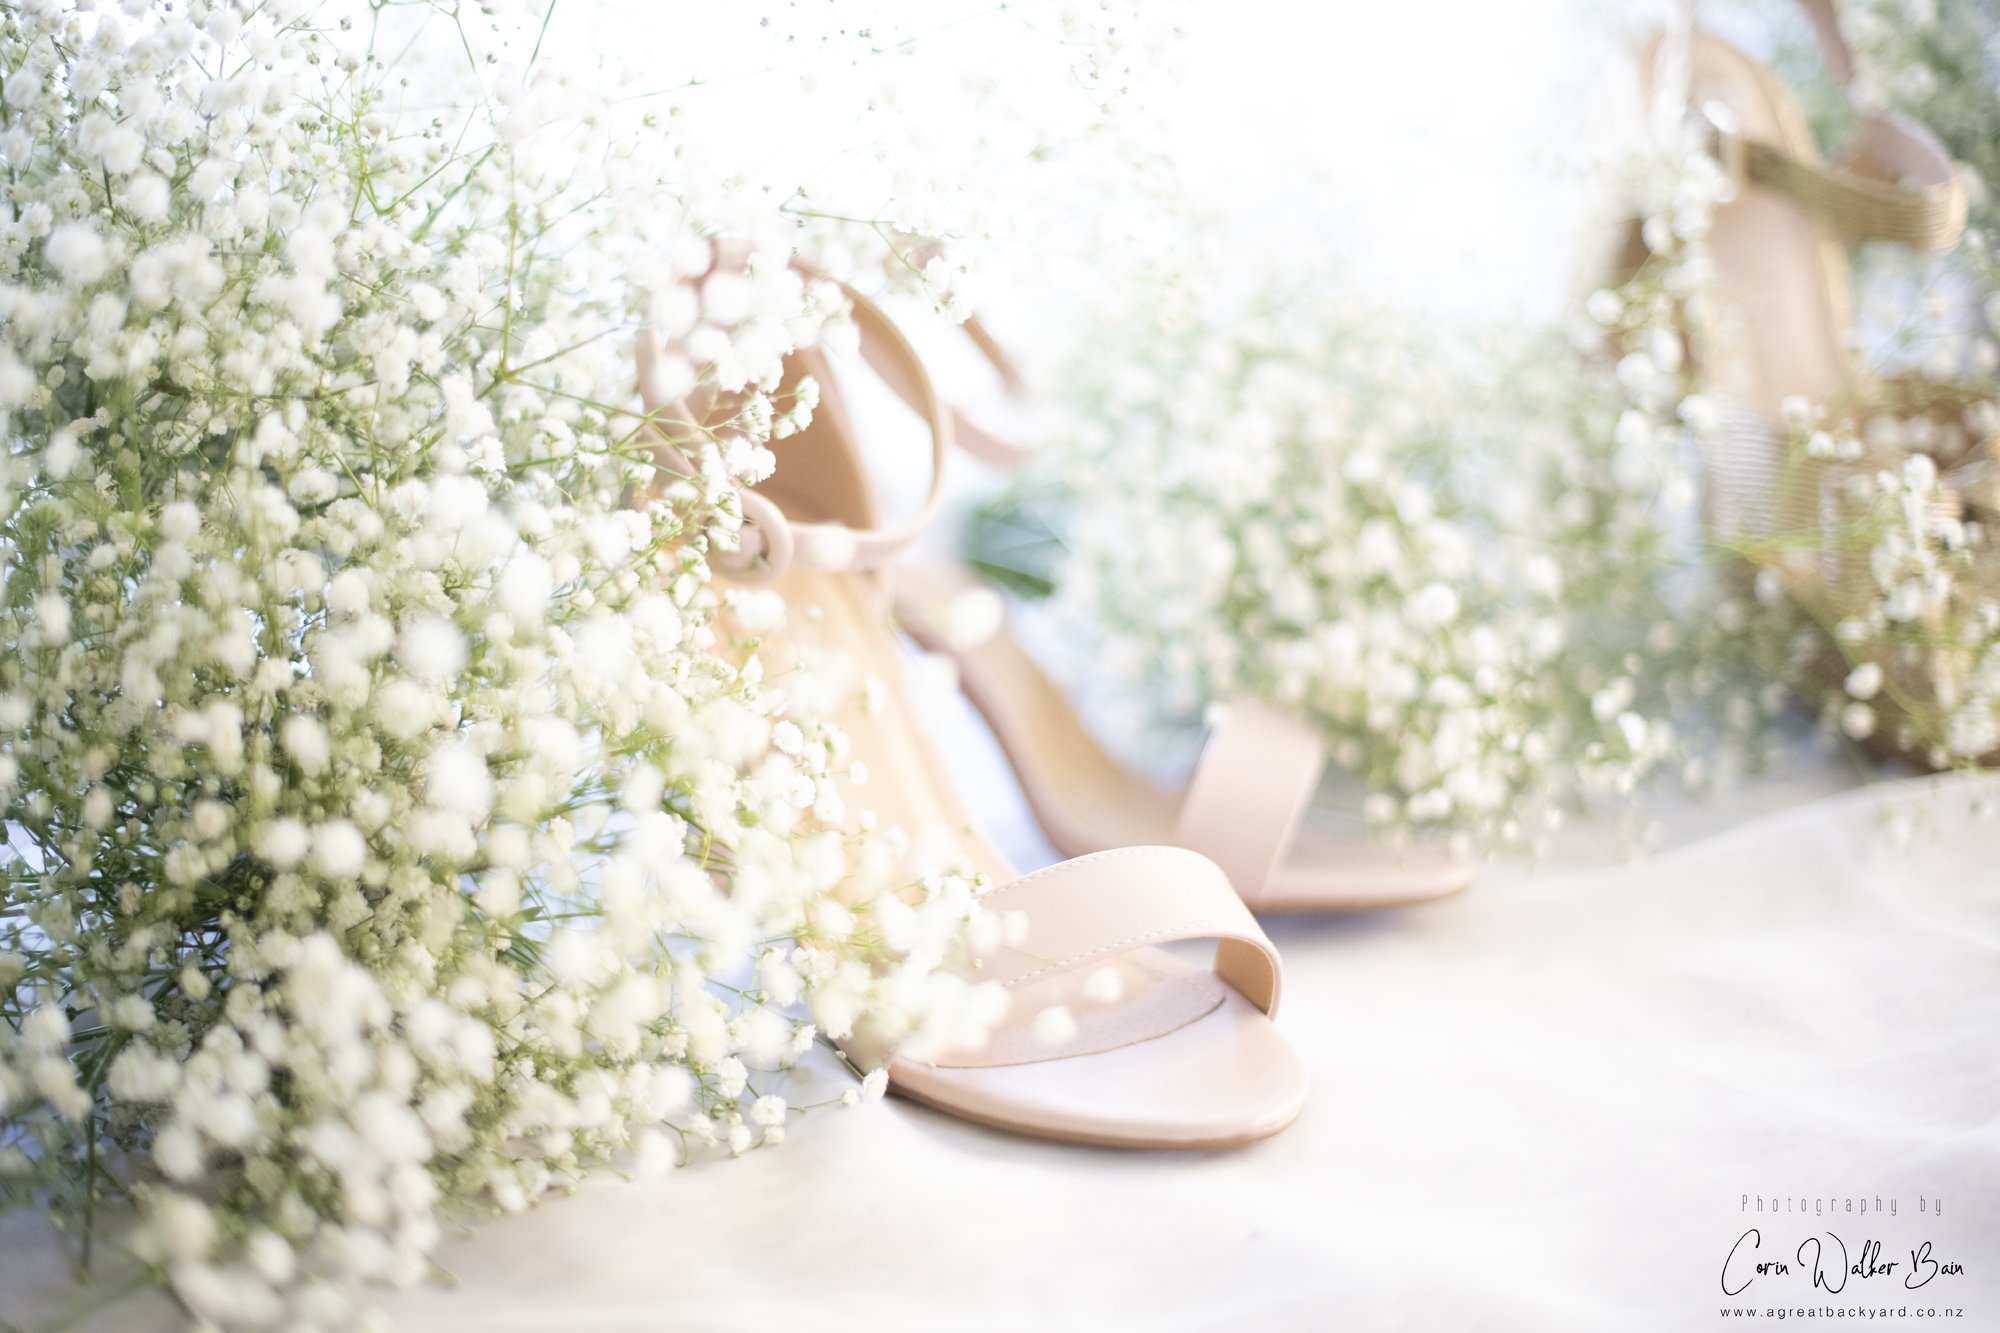 Bridesmaids' shoes